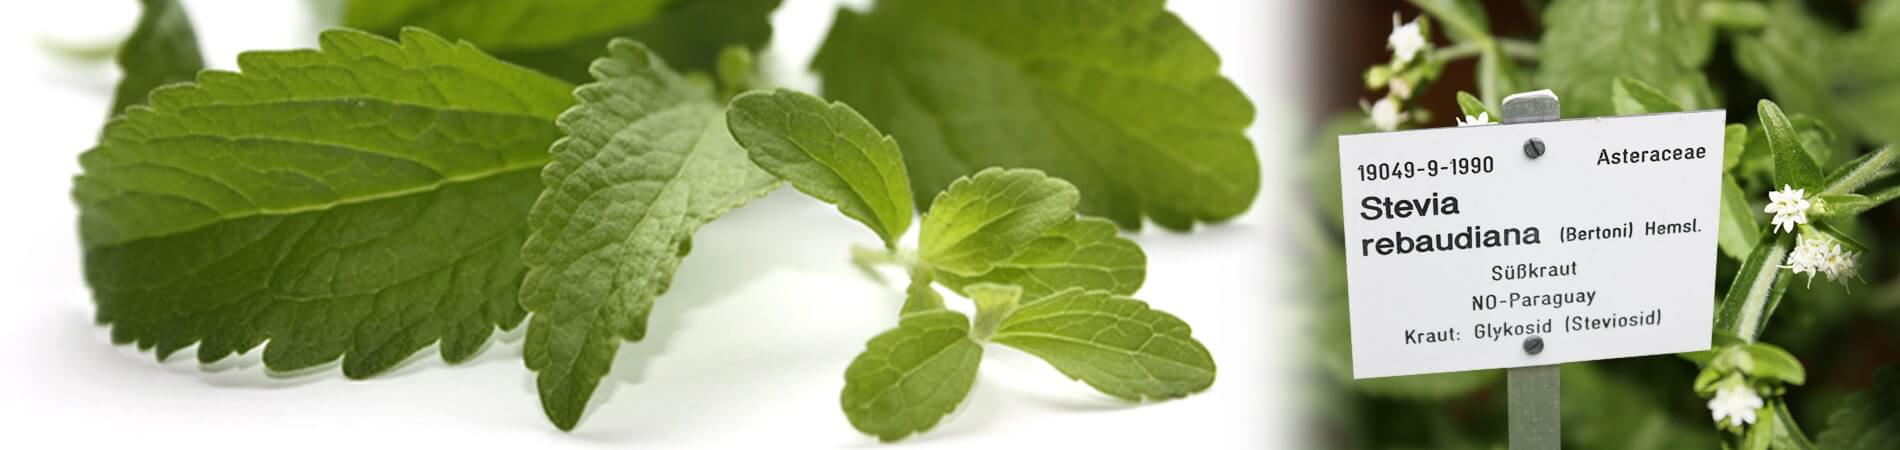 La planta de Stevia | Stevia rebaudiana Steviapura